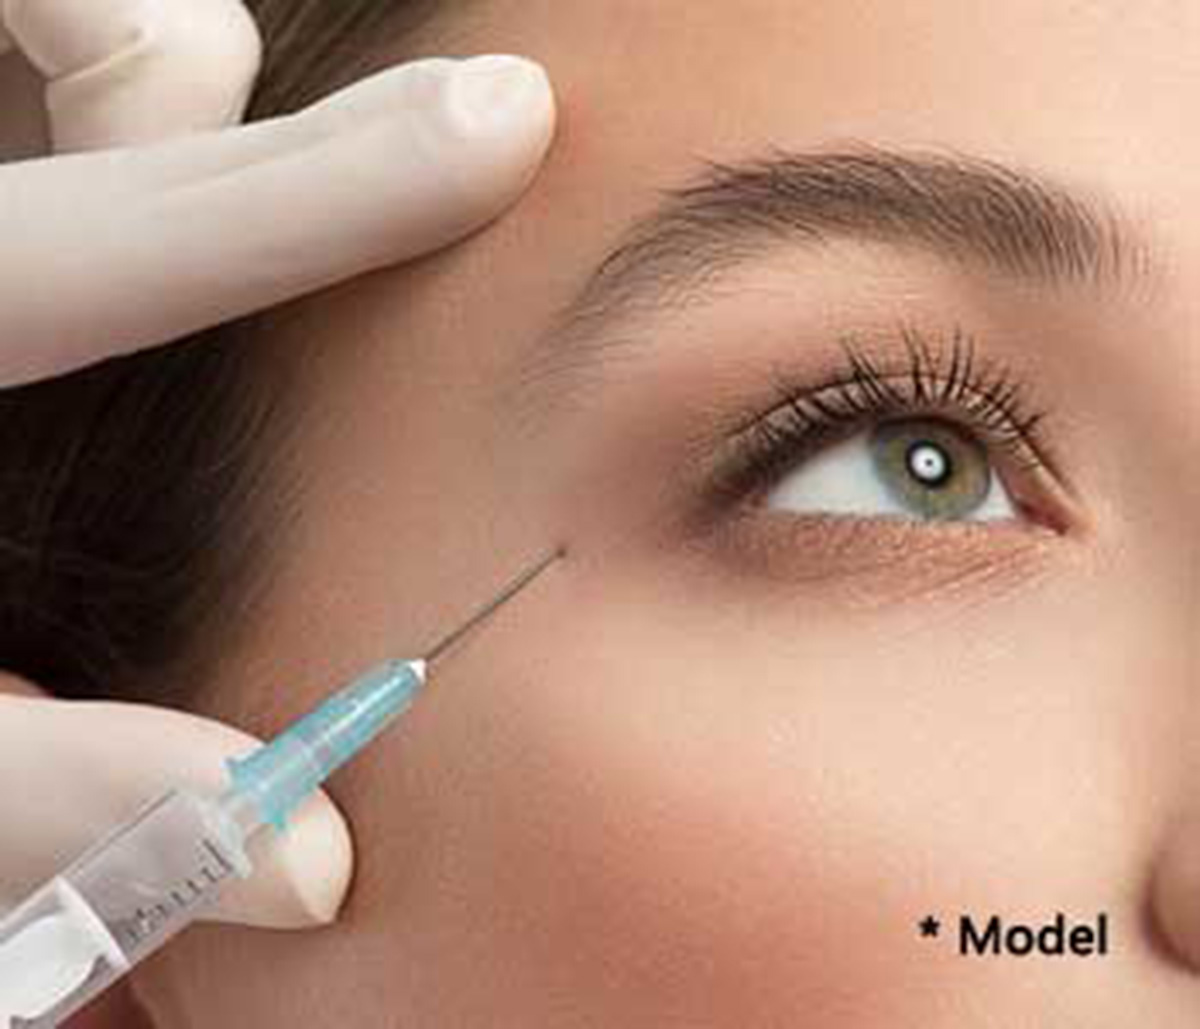 Dr. Dass describes Botox face lift